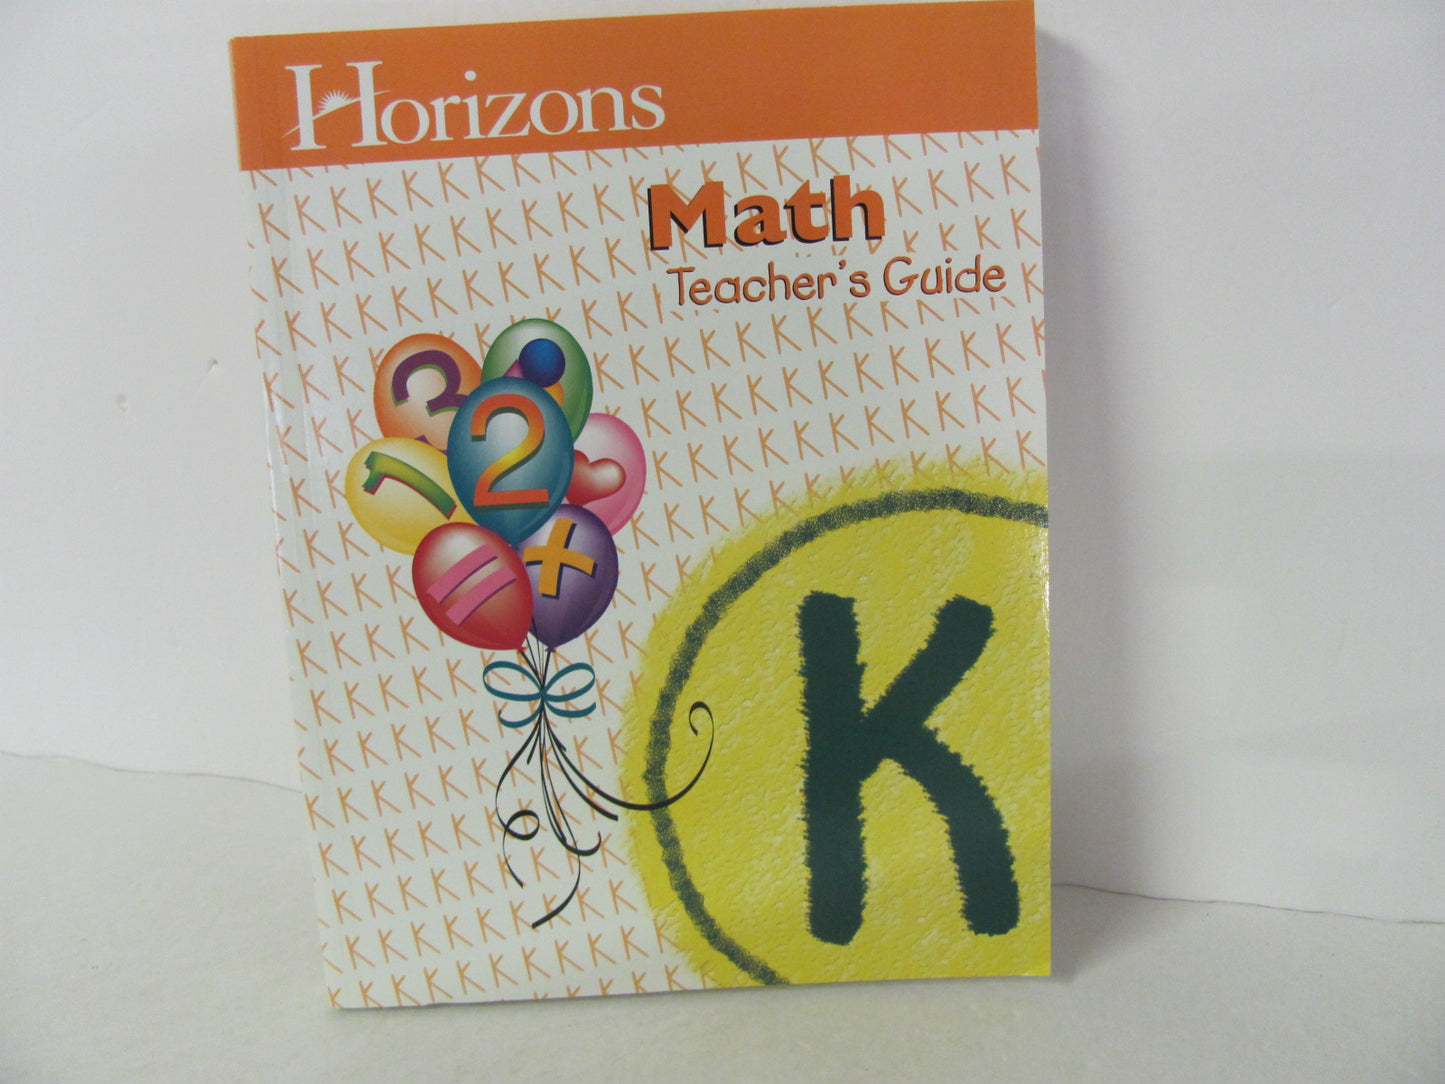 Math K Horizons Teacher Guide  Pre-Owned Kindergarten Mathematics Textbooks